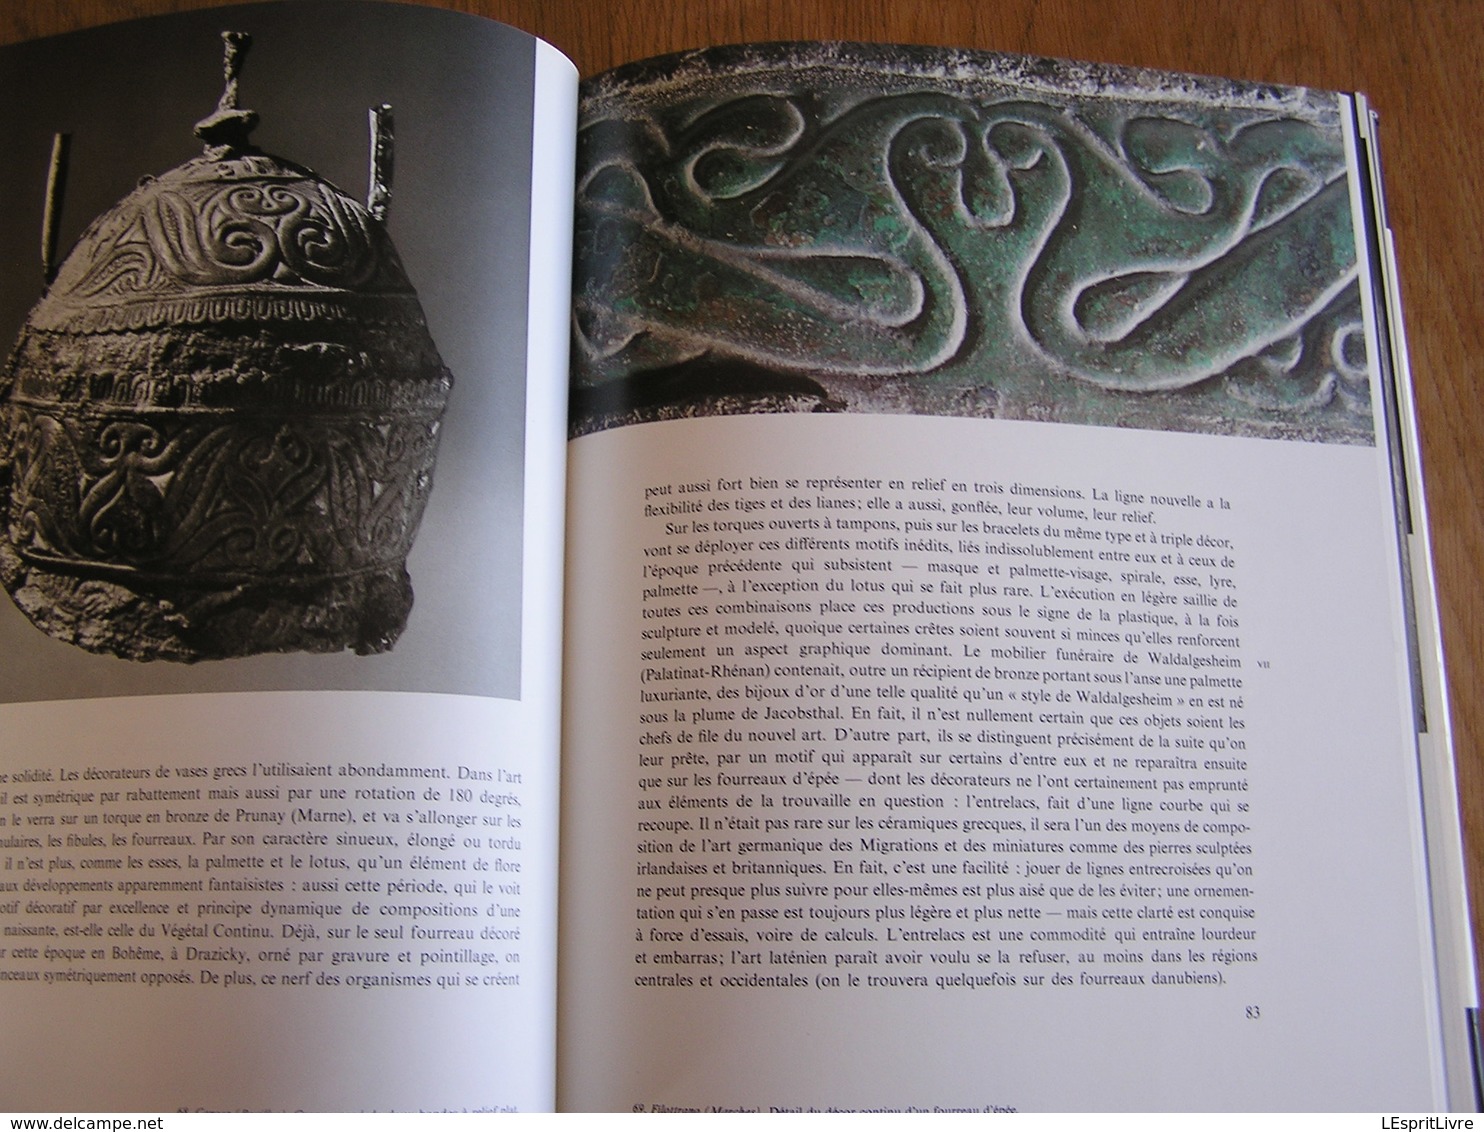 LES CELTES Histoire Beaux Arts Art Celtique Objets Bijoux Parures Univers des Formes Celtiques Age du Fer Gaule Europe